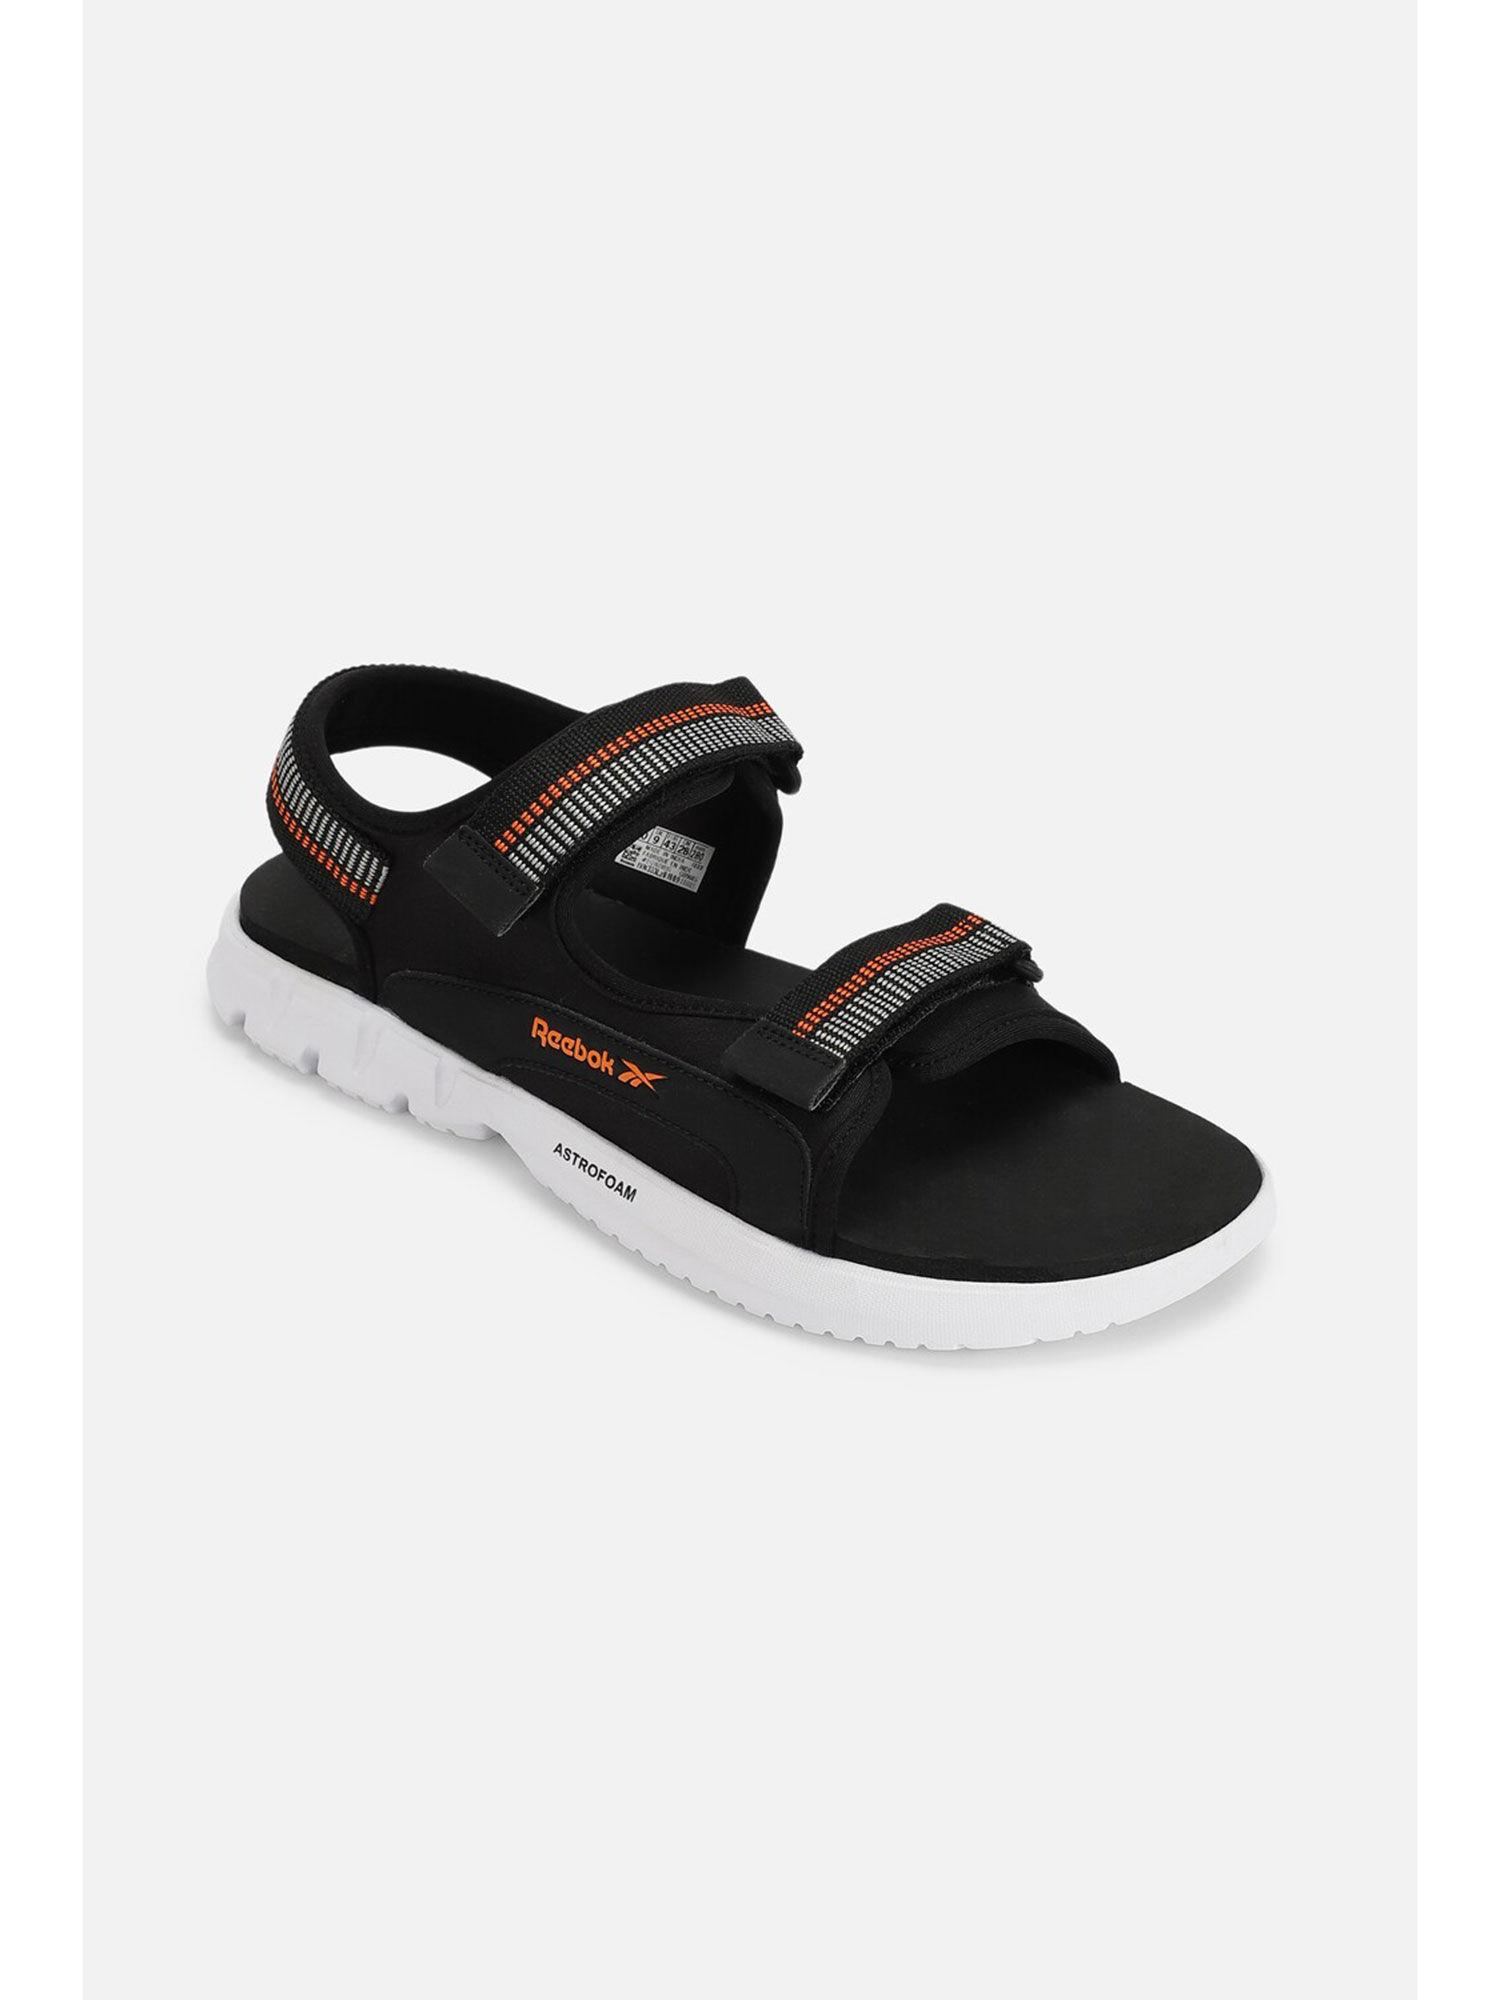 mens-aero-sandals-black